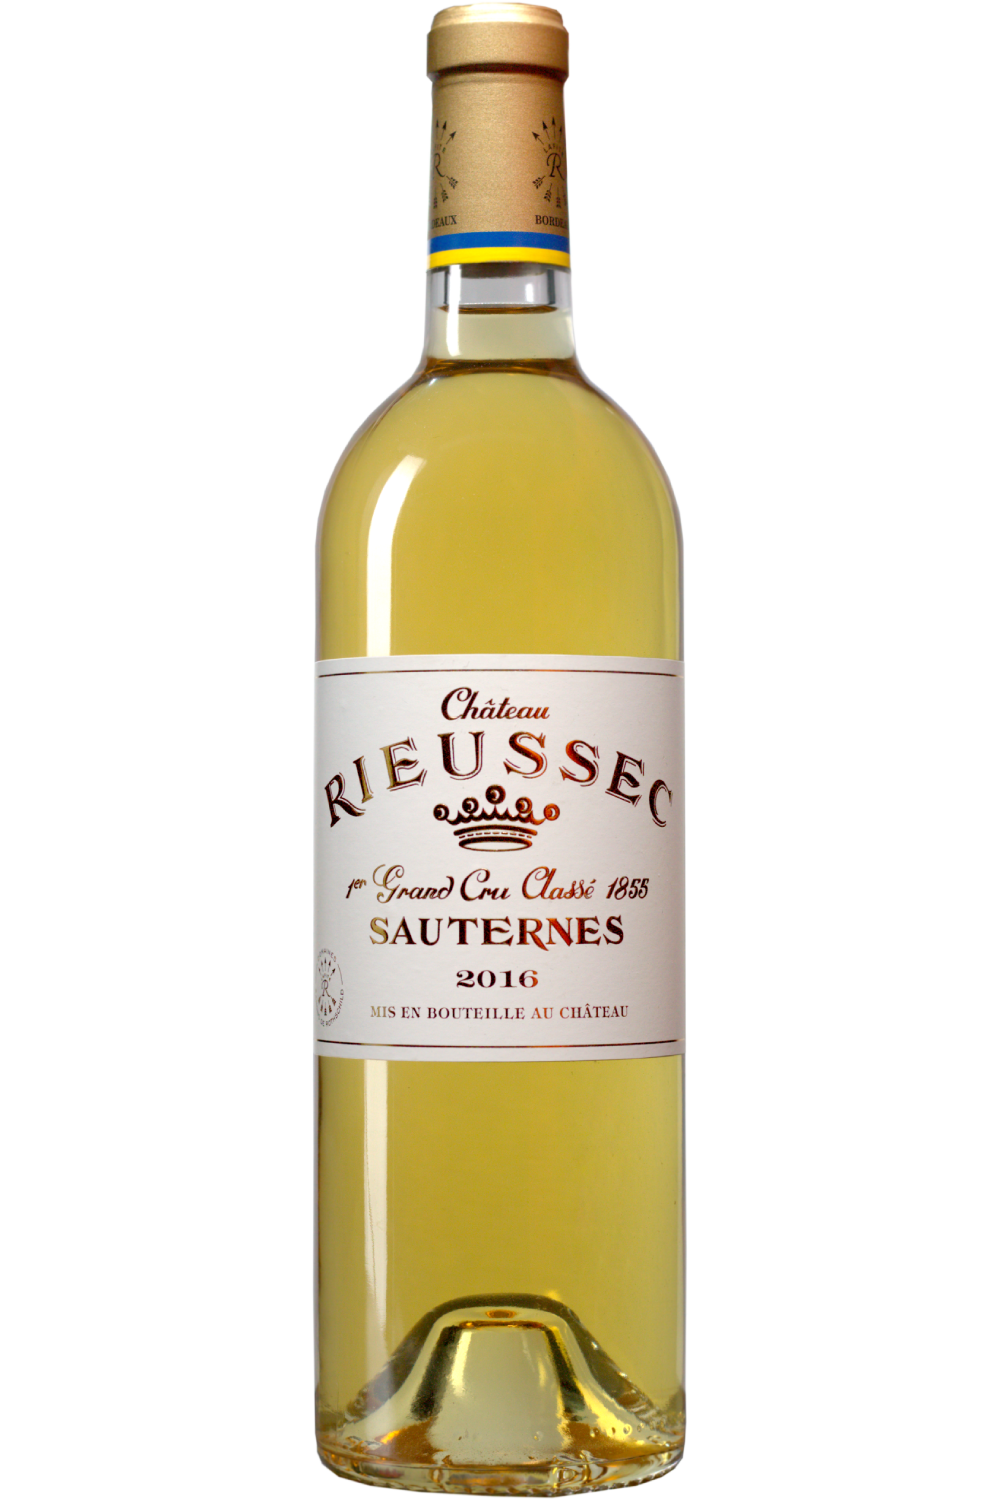 WineVins Château Rieussec Sauternes 2016